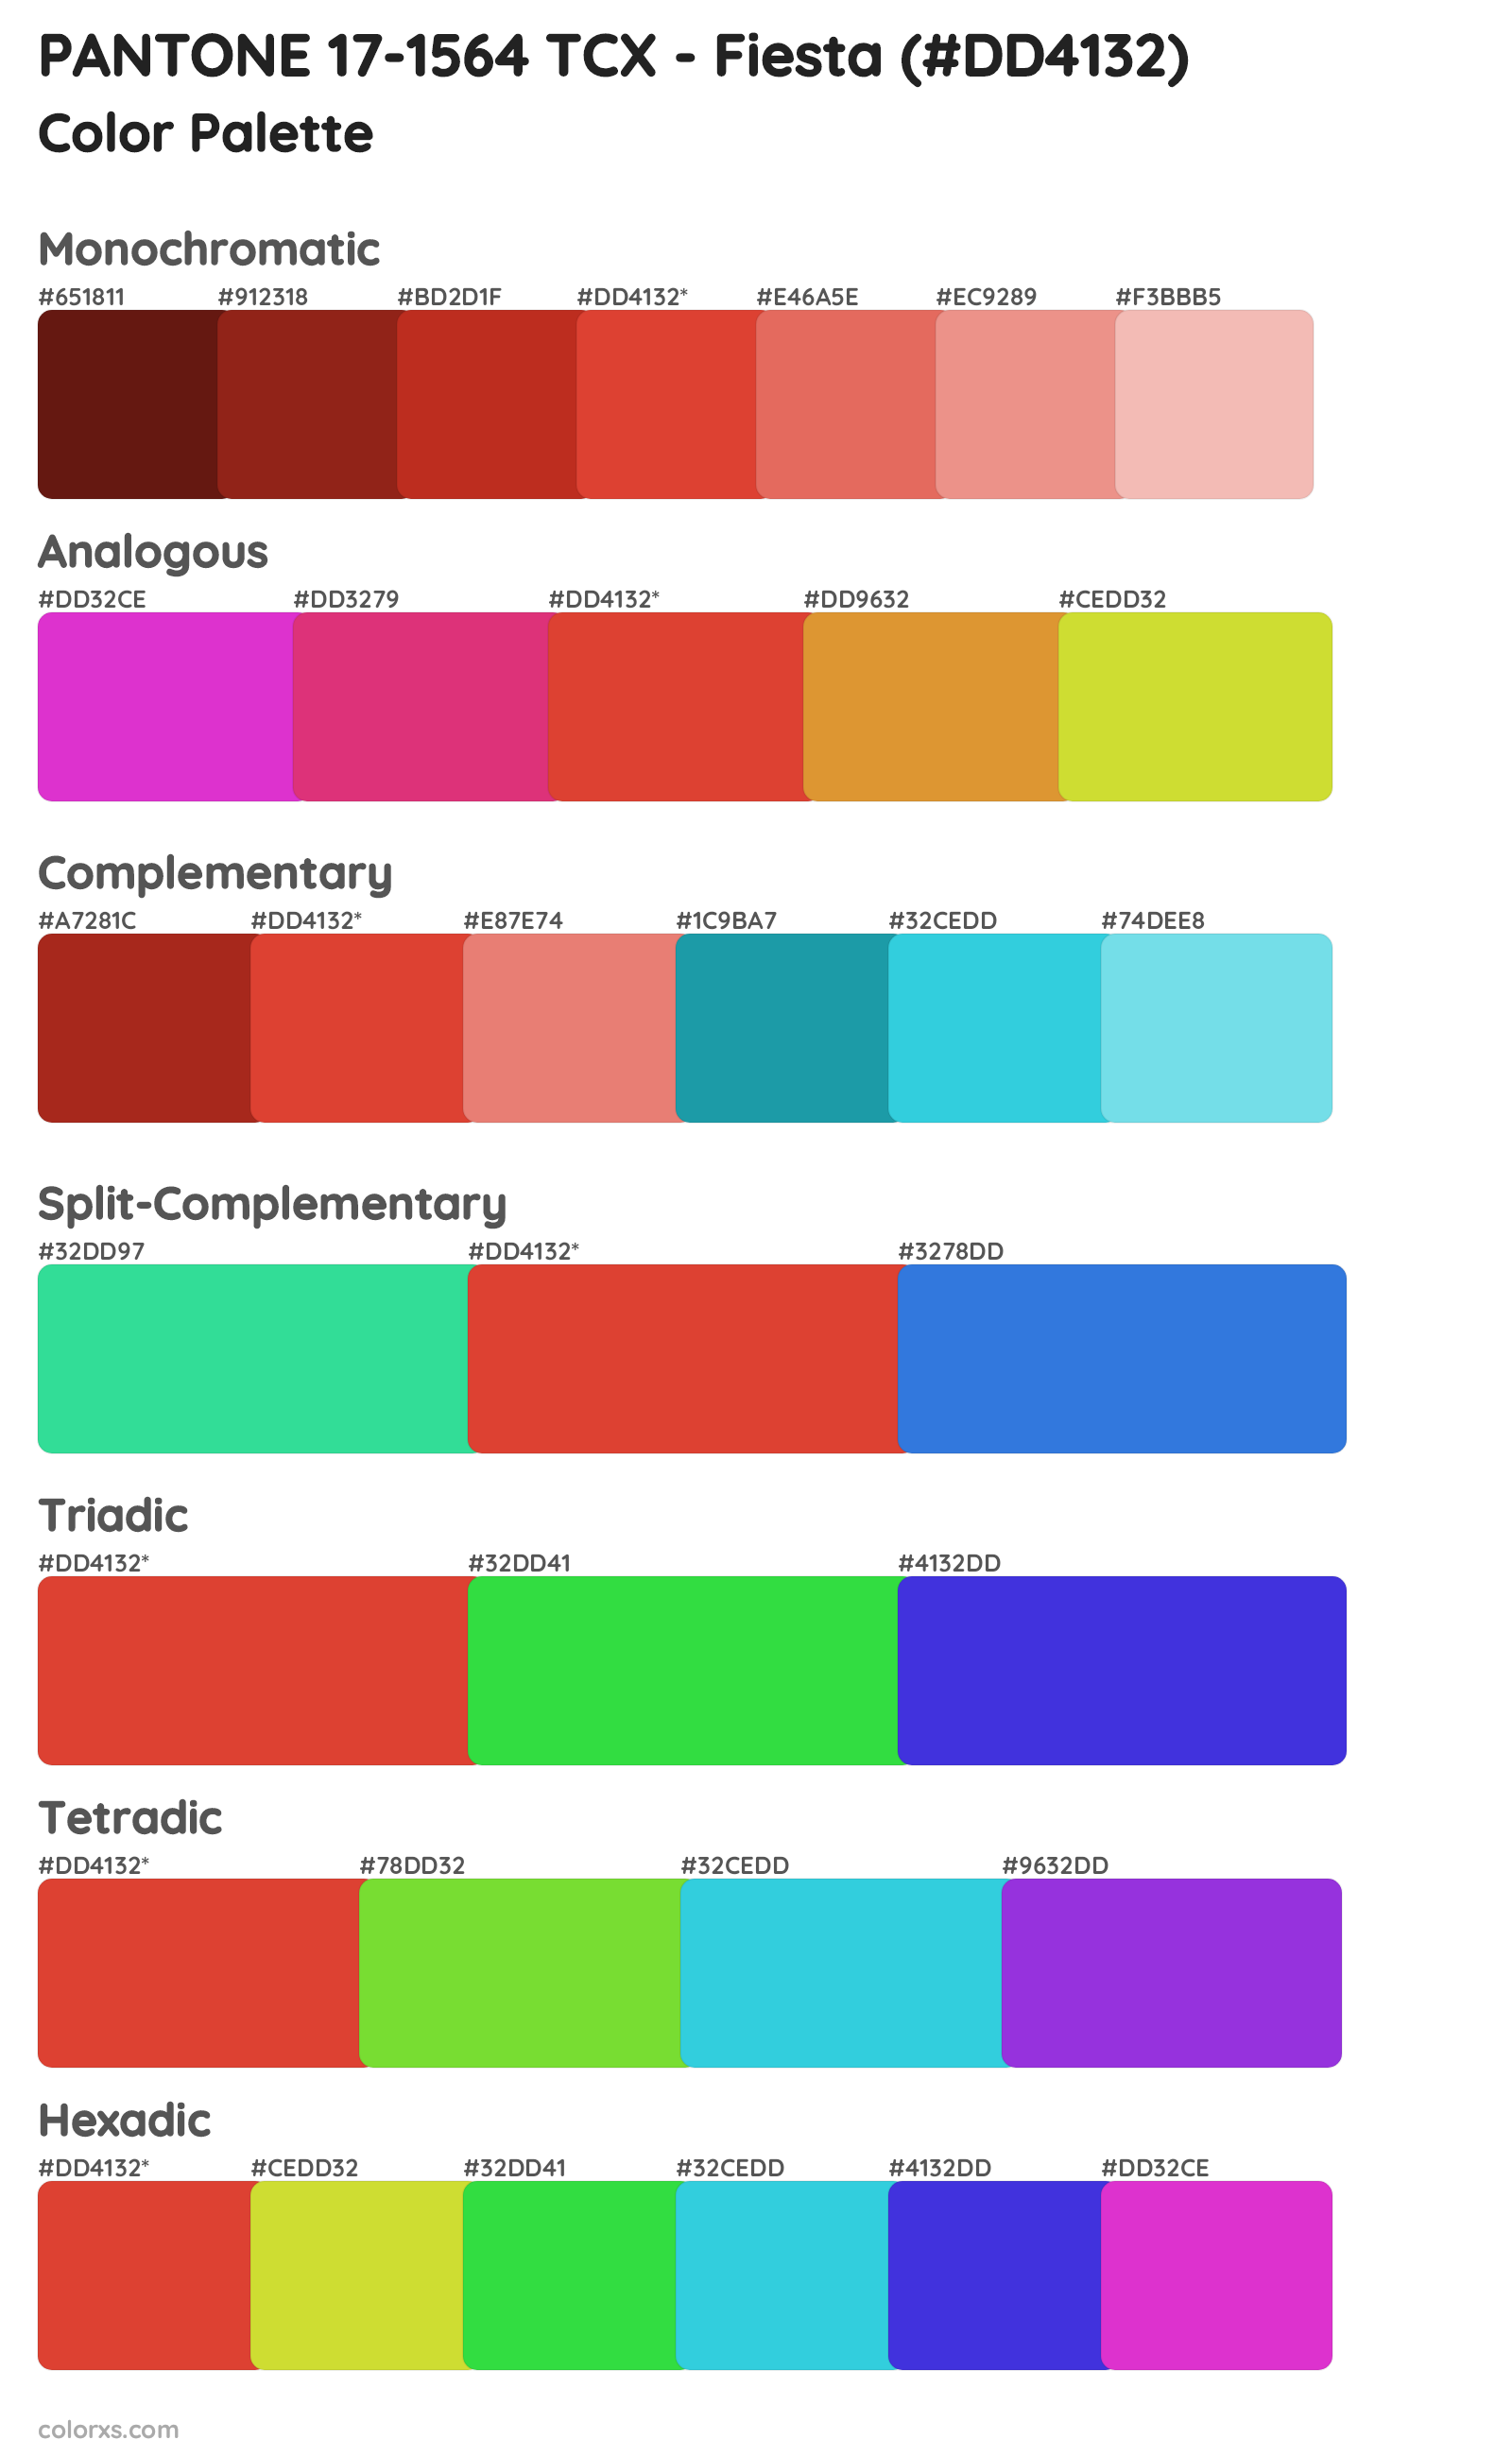 PANTONE 17-1564 TCX - Fiesta Color Scheme Palettes